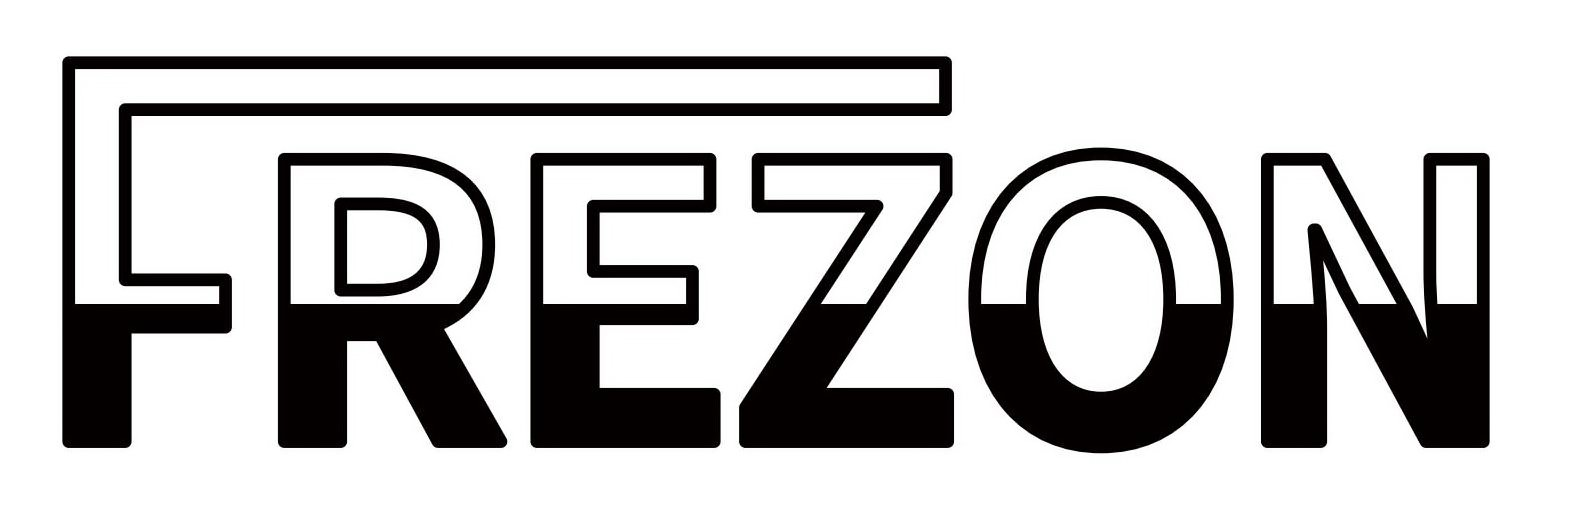 Trademark Logo FREZON